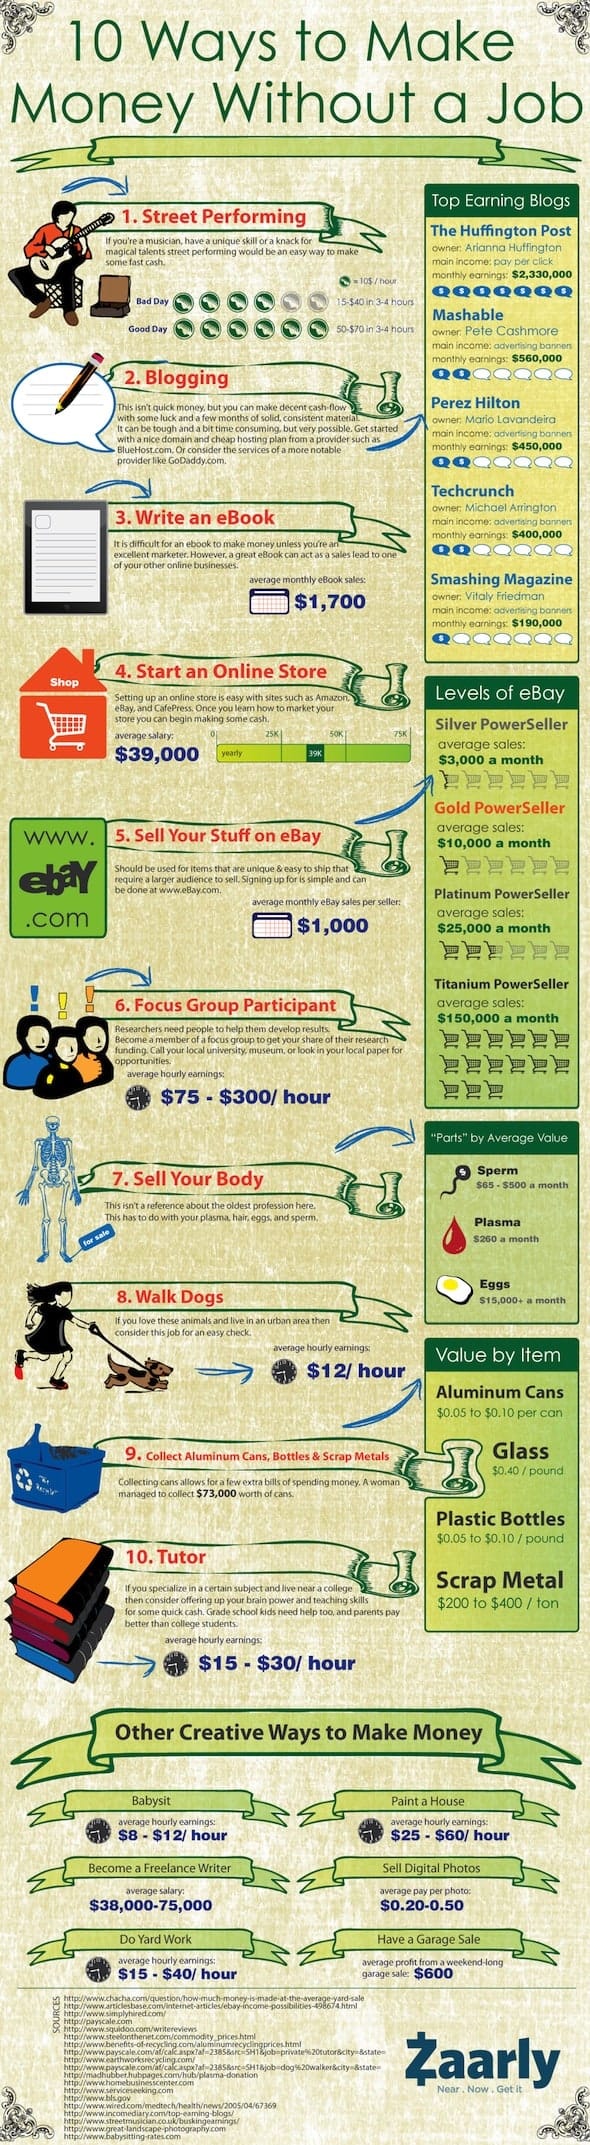 10 sätt att tjäna pengar utan ett jobb, infographic